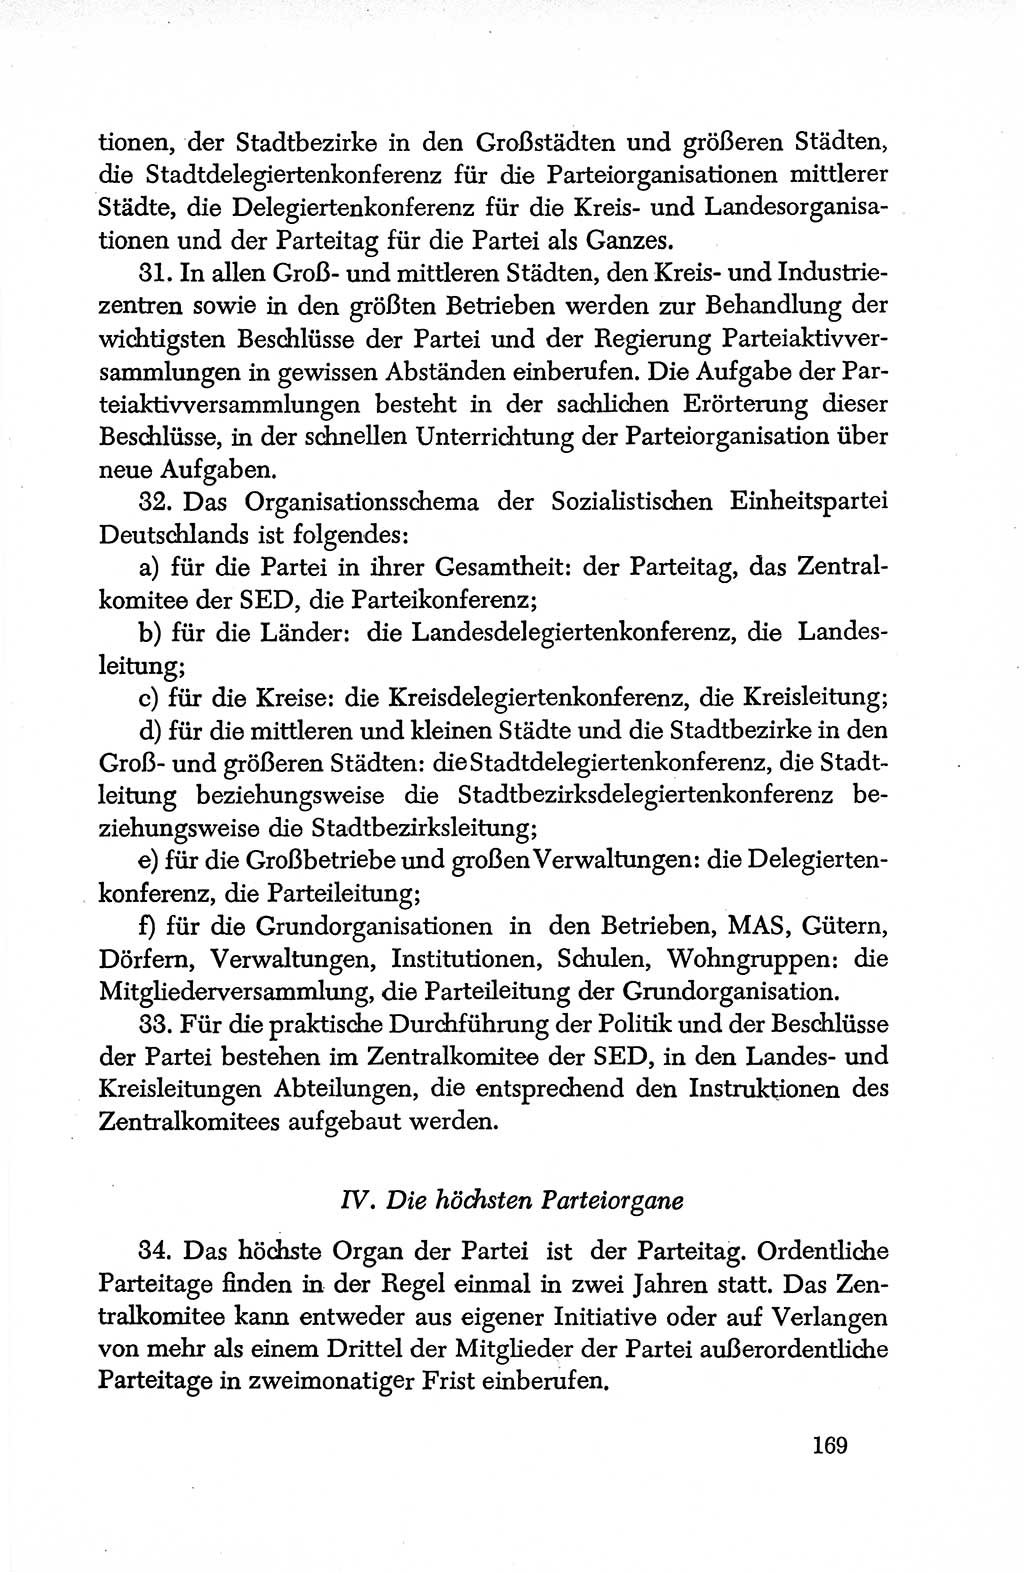 Dokumente der Sozialistischen Einheitspartei Deutschlands (SED) [Deutsche Demokratische Republik (DDR)] 1950-1952, Seite 169 (Dok. SED DDR 1950-1952, S. 169)